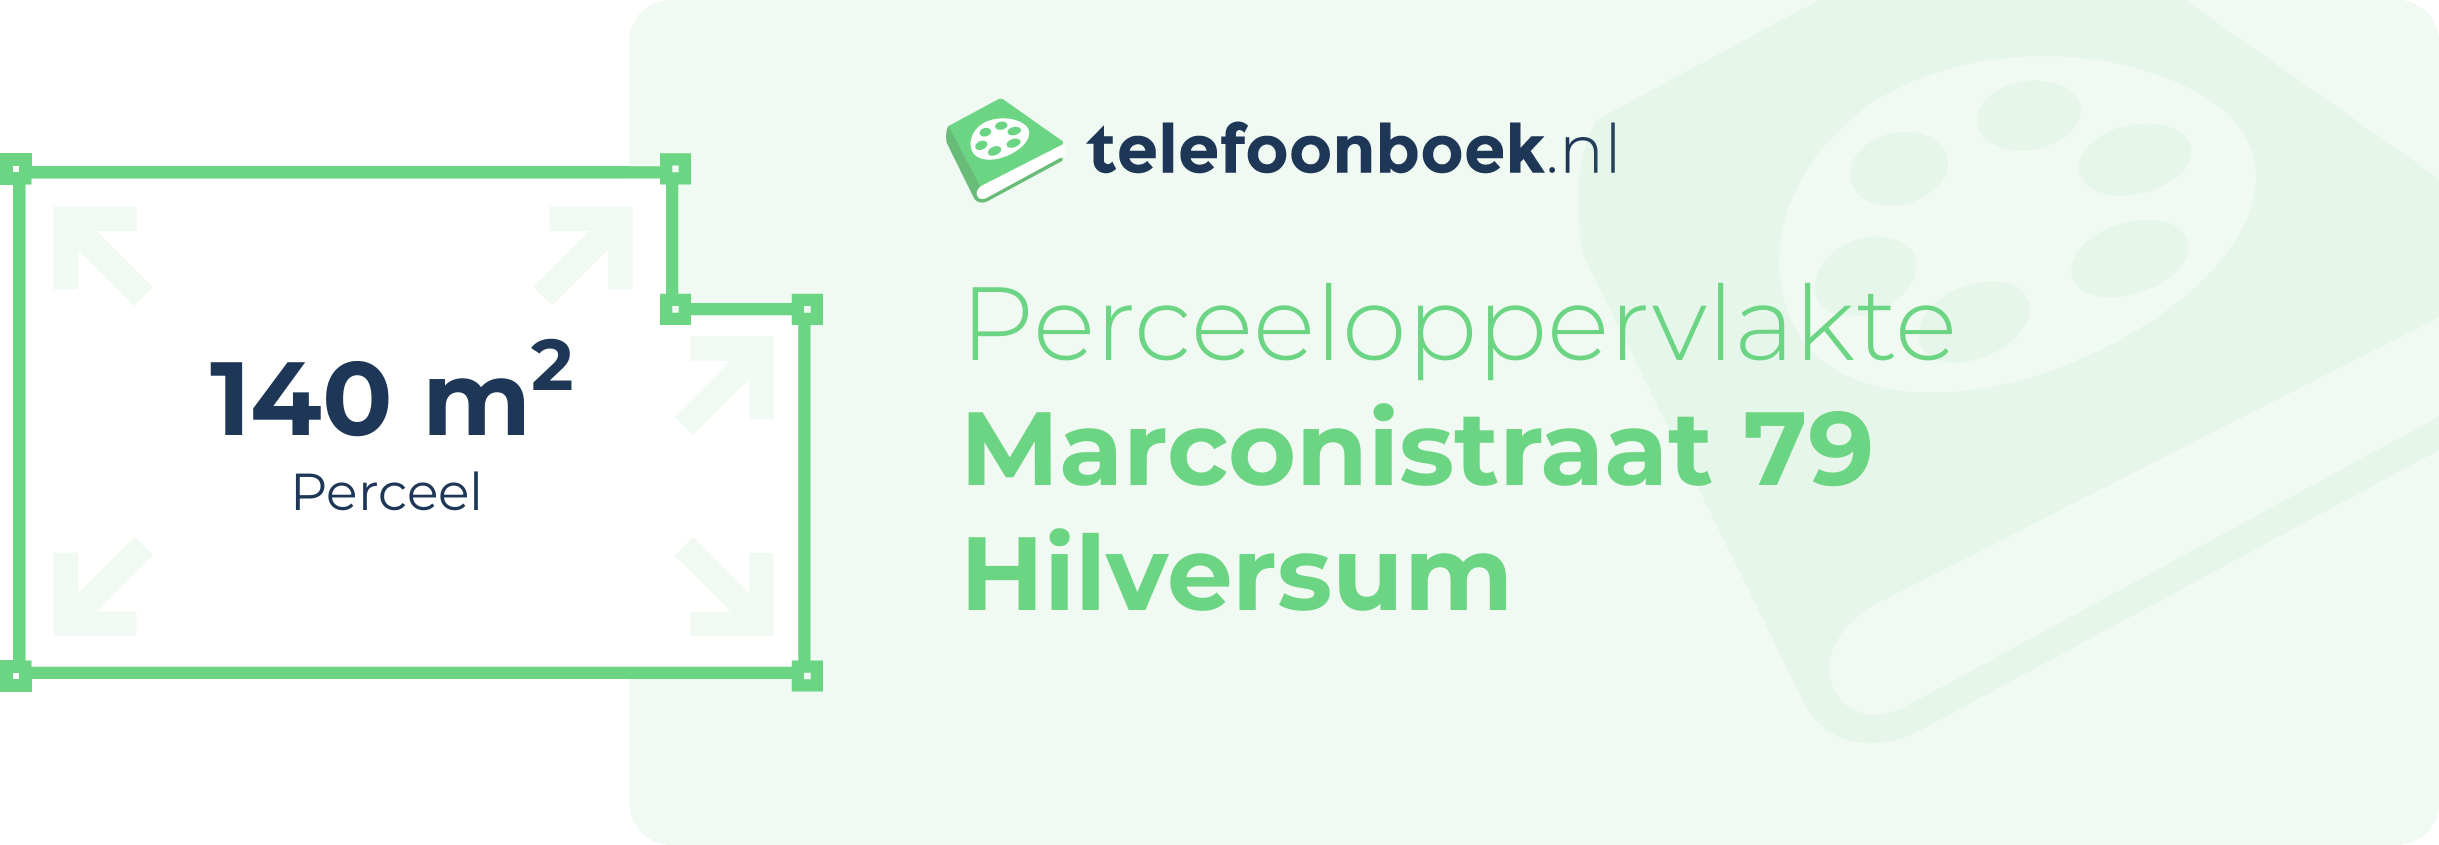 Perceeloppervlakte Marconistraat 79 Hilversum